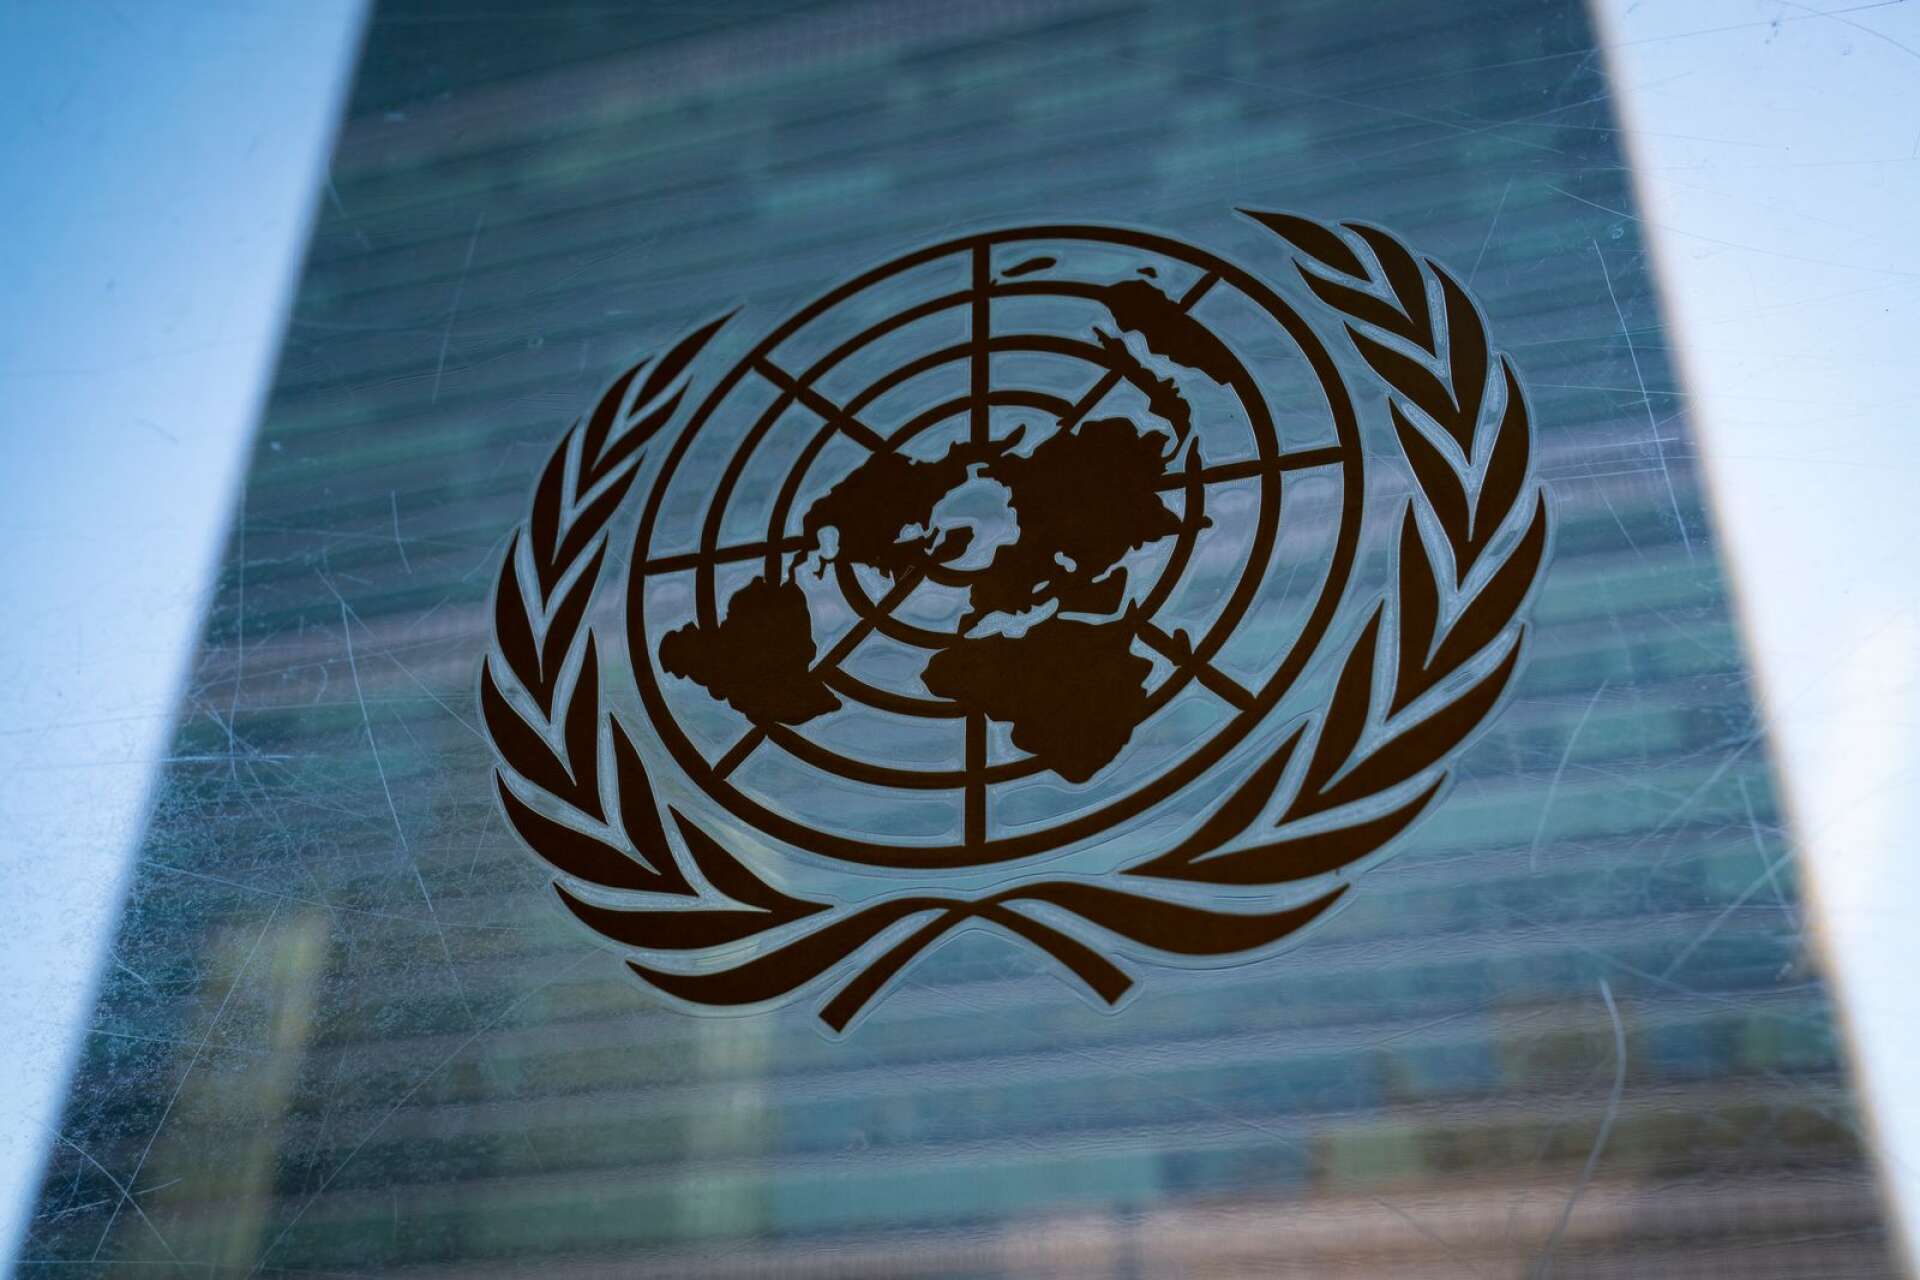 FN har gett världen en omfattande katalog över mänskliga rättigheter och är unikt som mötesplats, skriver Annelie Börjesson med flera.